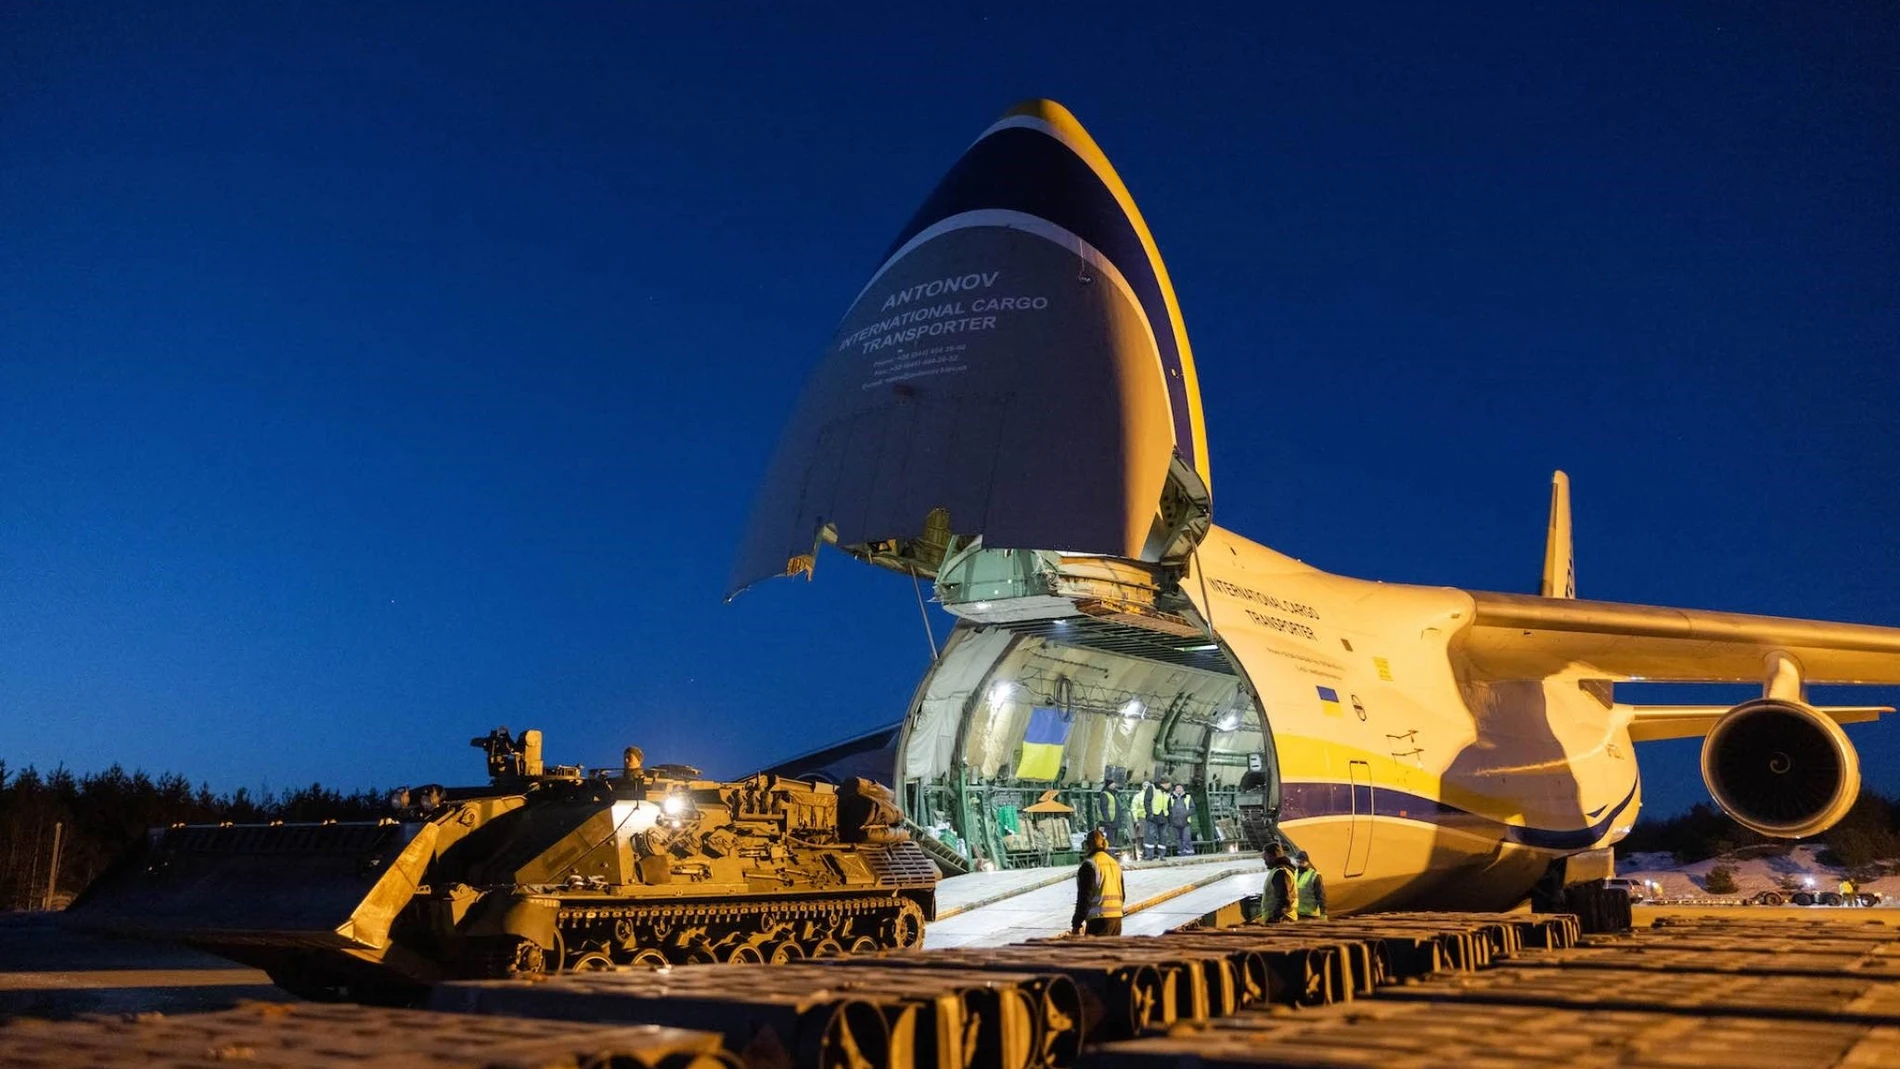 Noruega hace entrega de ocho tanques a Ucrania
FUERZAS ARMADAS DE NORUEGA
20/03/2023